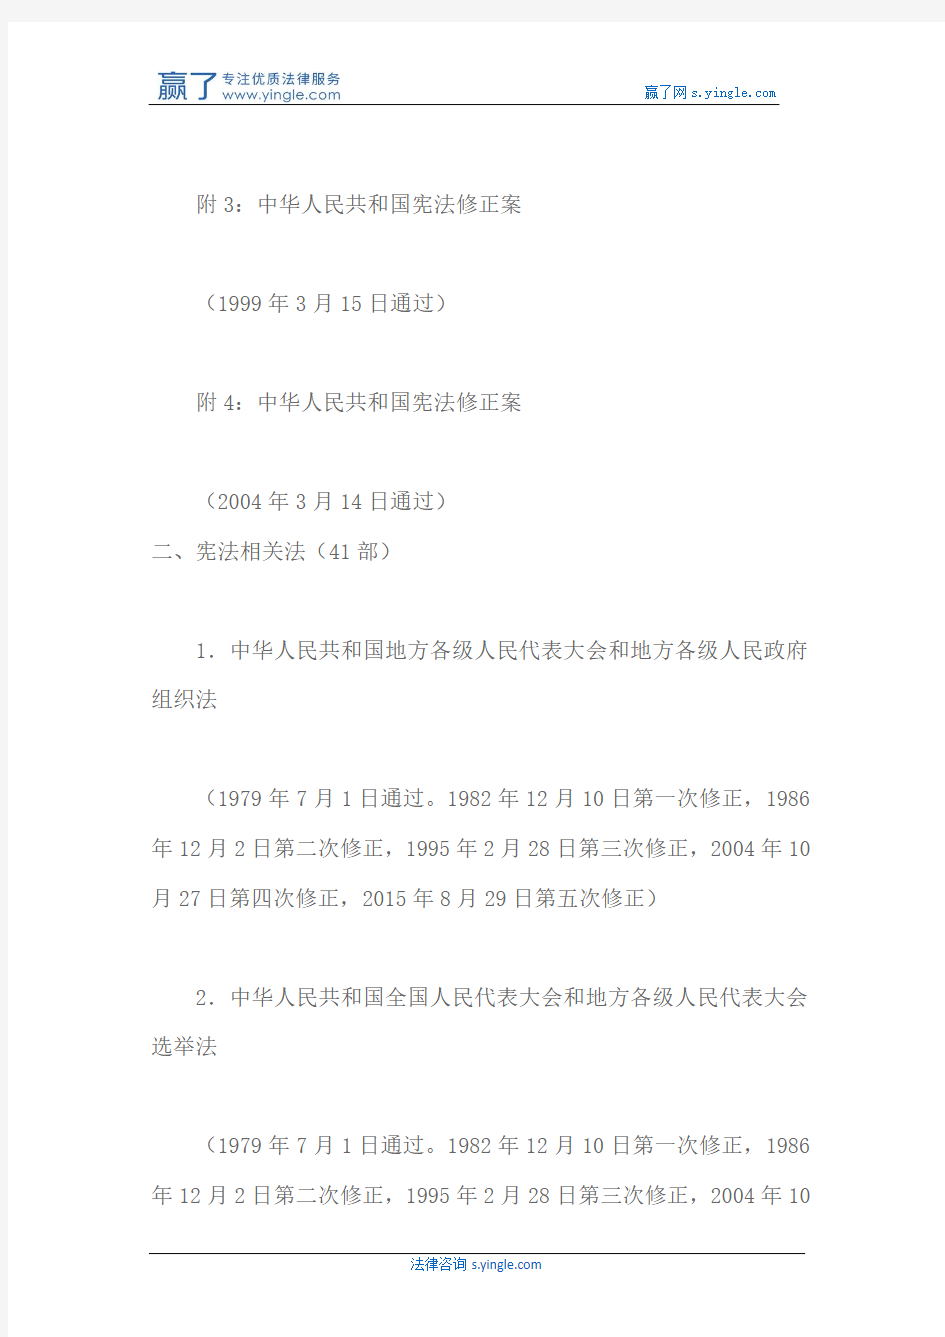 中华人民共和国现行有效法律分类目录(260件)